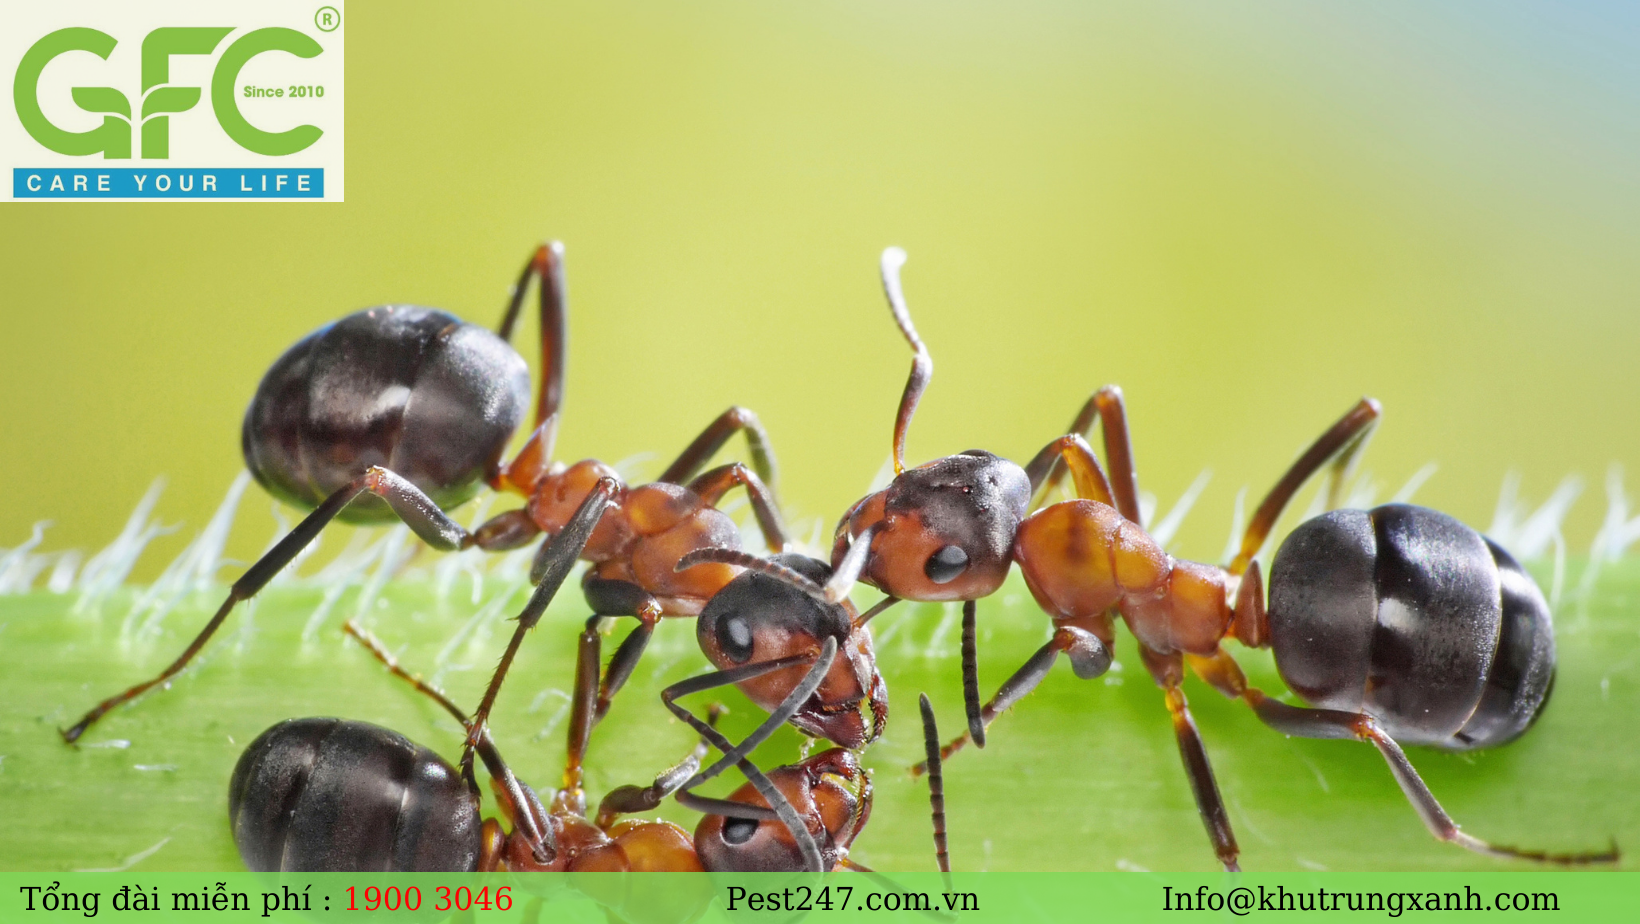 Kiến ba khoang là loài kiến ở Việt Nam được coi như loài phổ biến